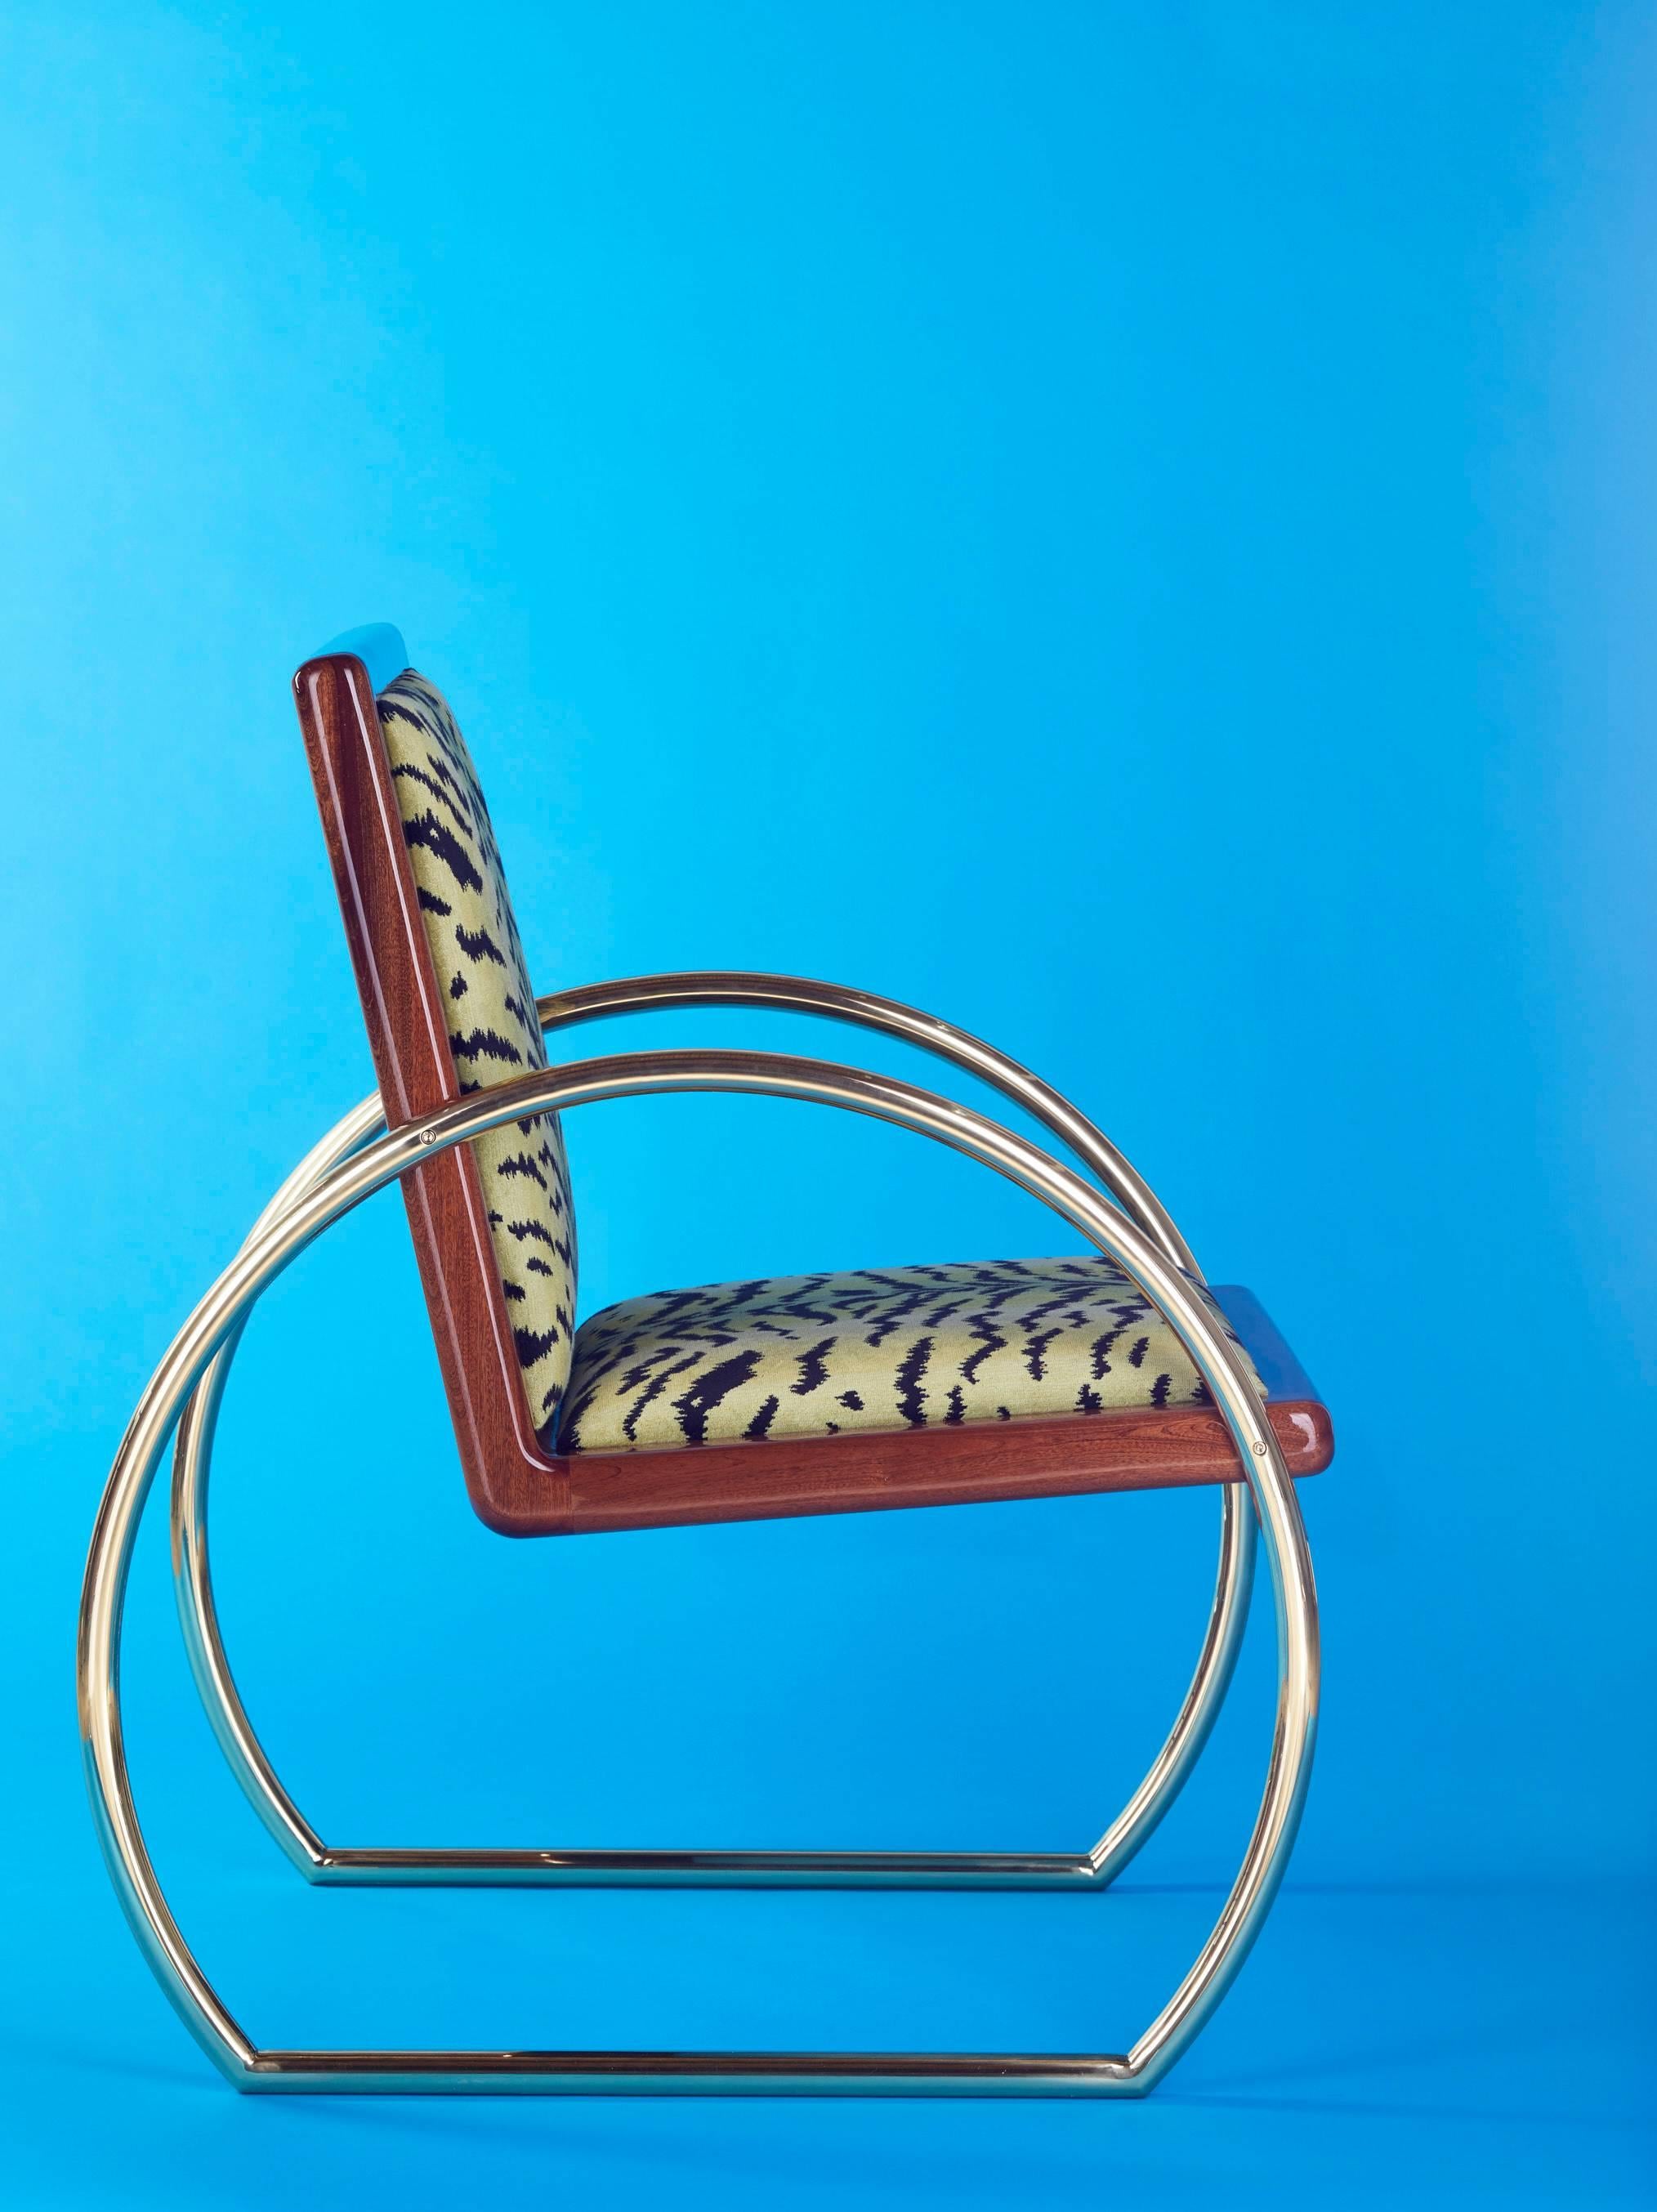 La chaise longue D-Ring est une chaise longue d'inspiration Art déco fabriquée en acajou, laiton massif et velours. 

L'acajou du Honduras est laqué avec de multiples cotes de laque ultra-brillante. Les accoudoirs et les pieds sont en laiton massif